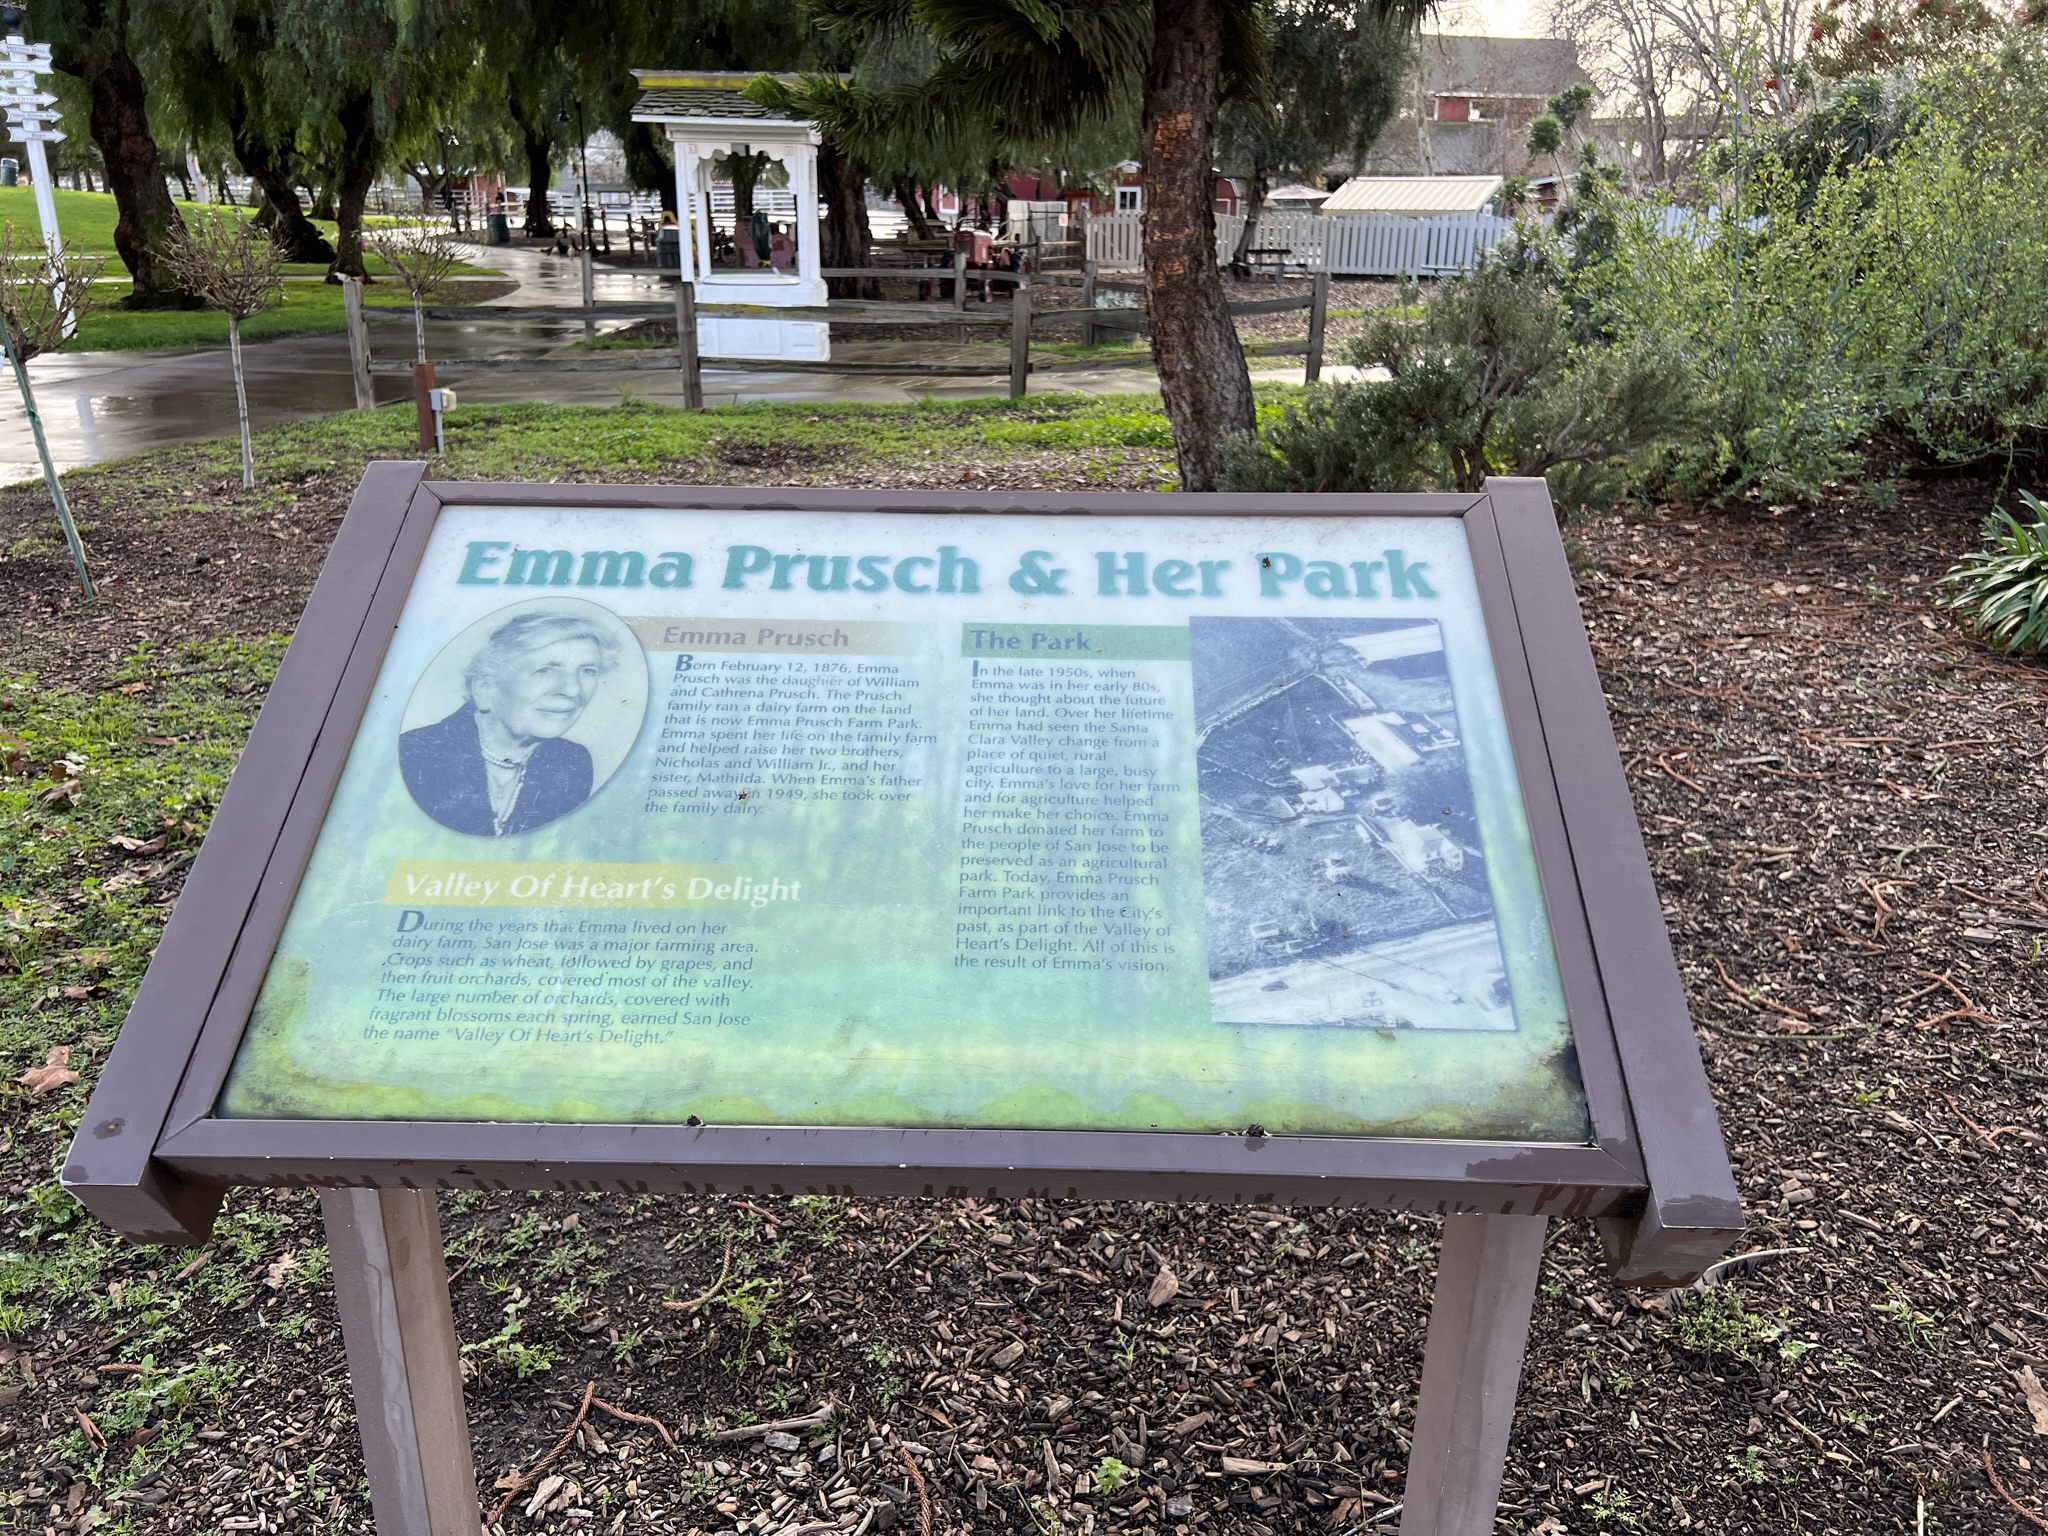 这个农场是 Emma Prusch 在去世后捐献给 San Jose 市政府的